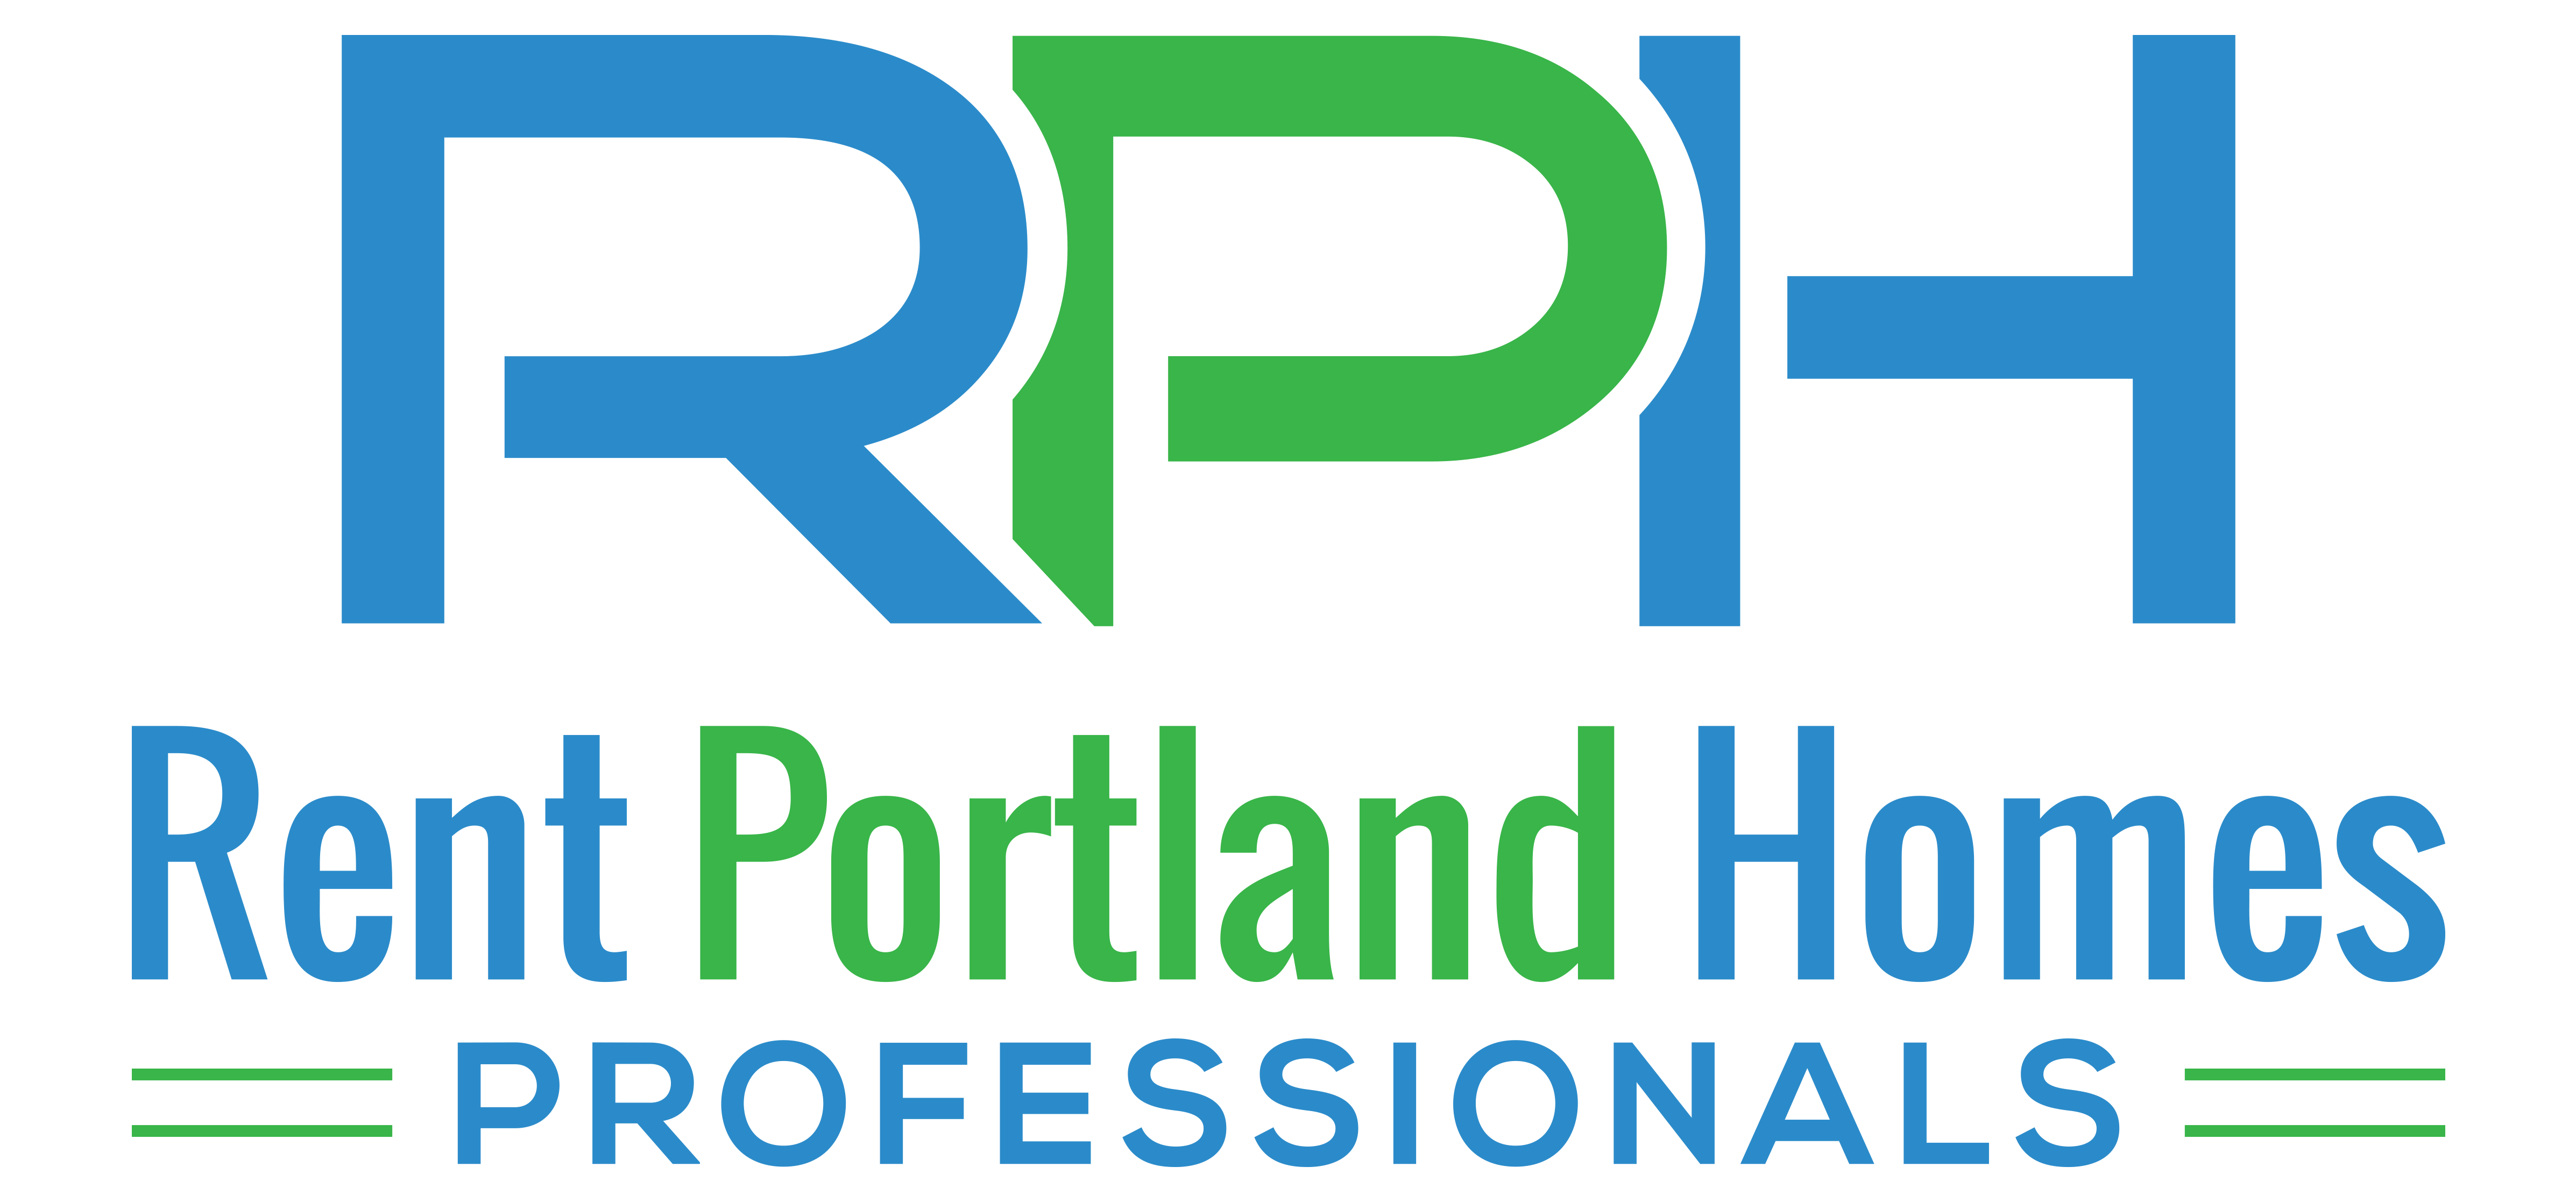 Rent Portland Homes Professionals